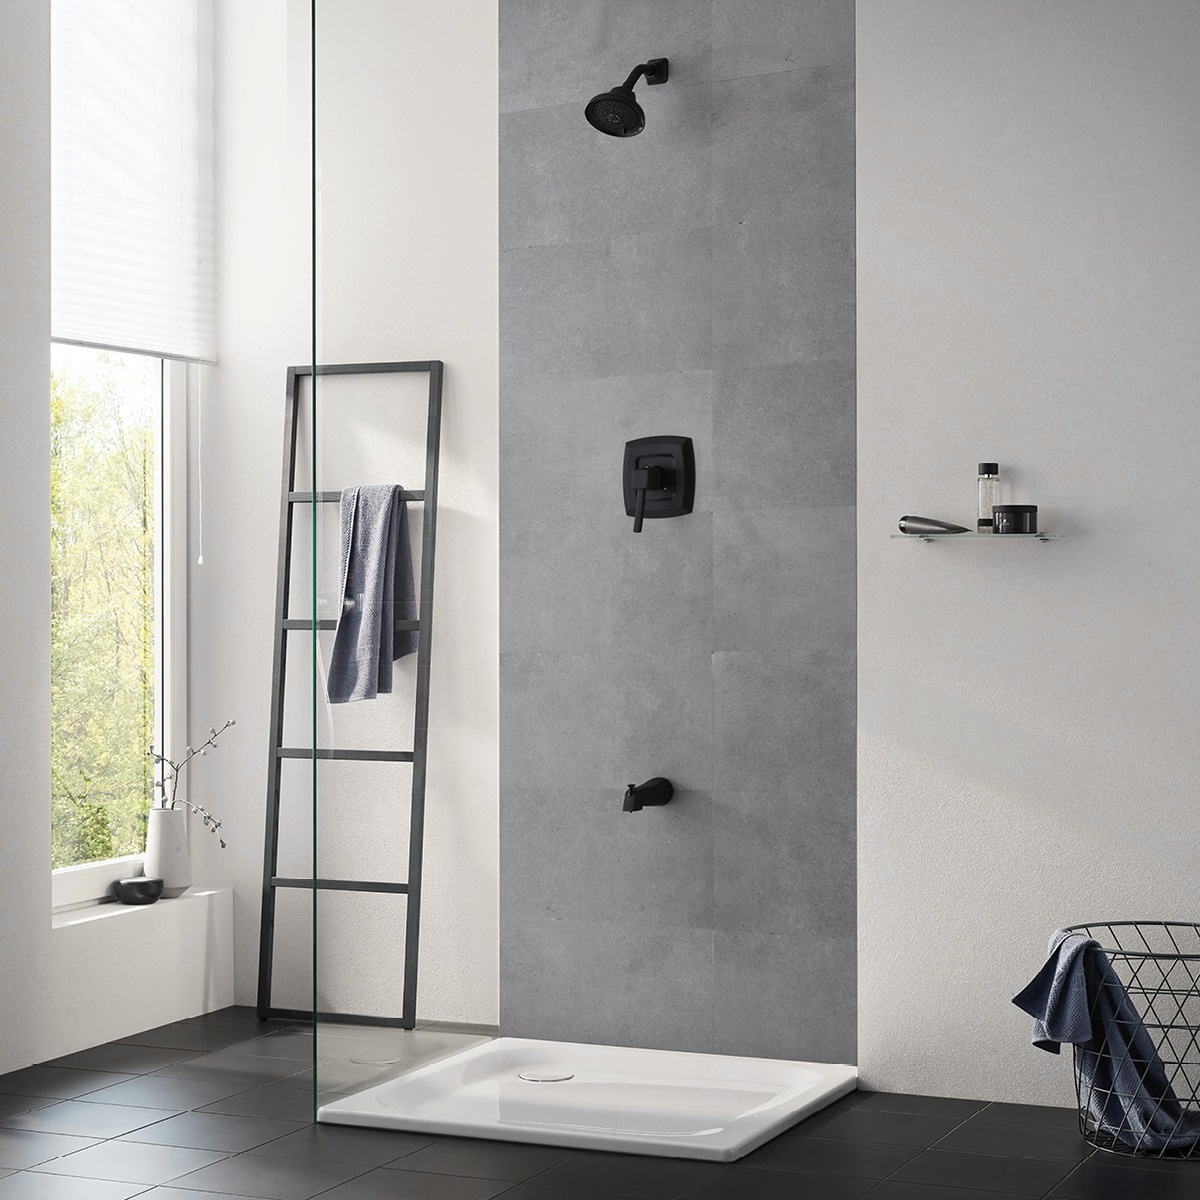 Favorável Durável Preto Clássico Moderno Banheiro 5 Maneiras Torneira Banheira de Chuveiro Conjunto de Banho e Chuveiro